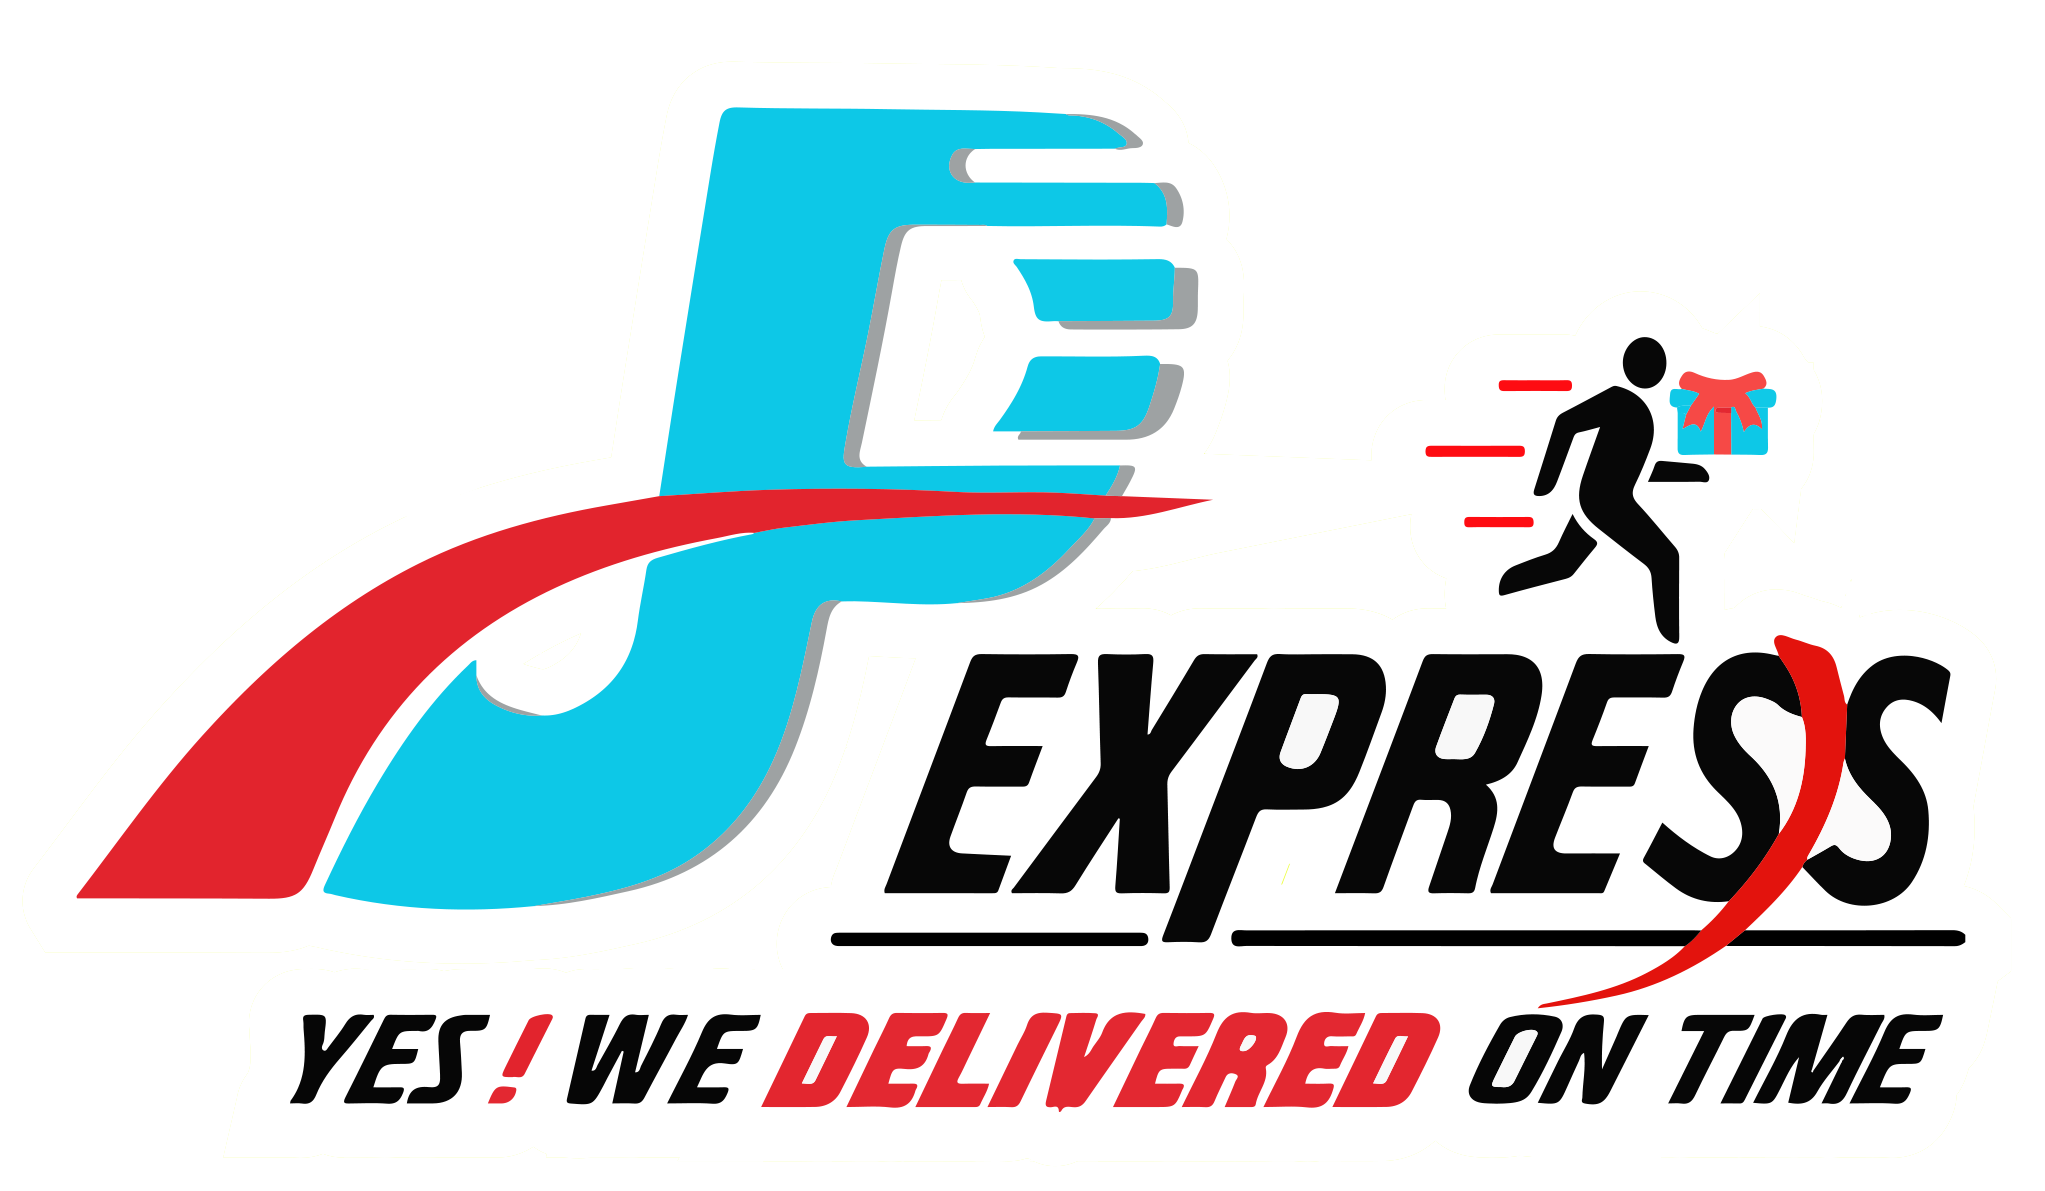 J.P Express